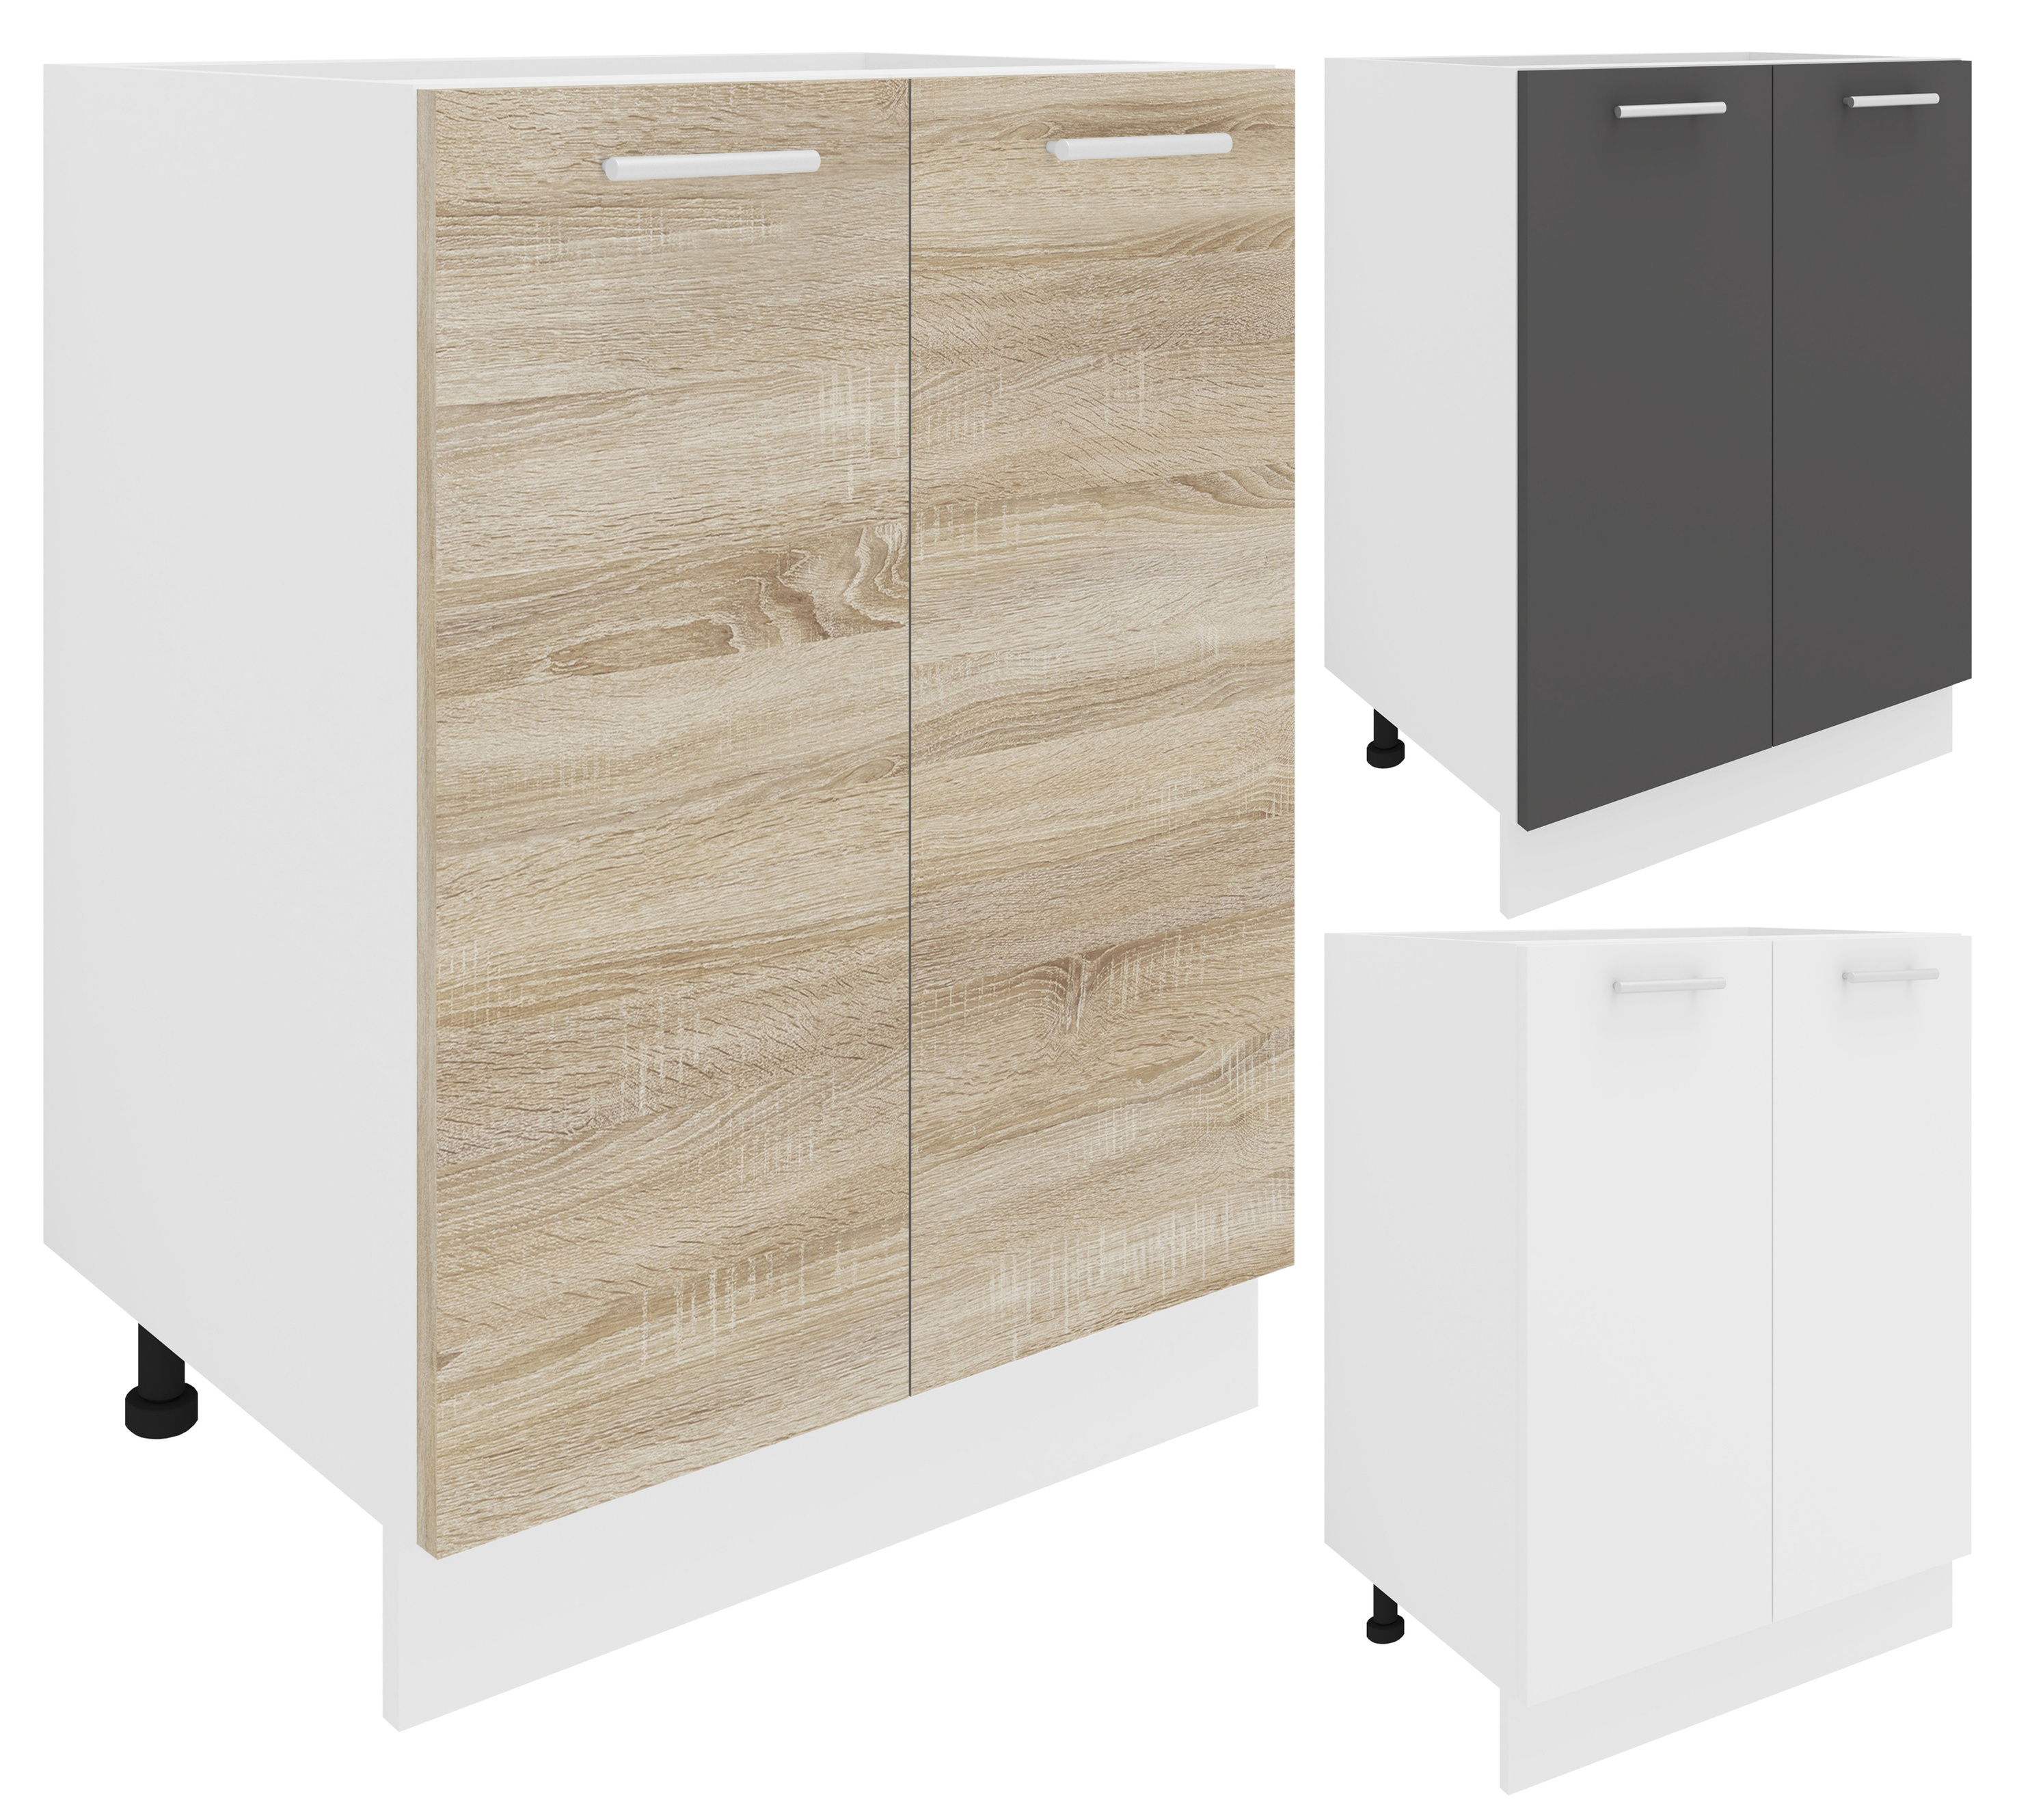 VCM Küchenschrank Breite 60 cm Drehtüren Unterschrank Küche Küchenmöbel  Esilo Farbe: Weiß Sonoma-Eiche